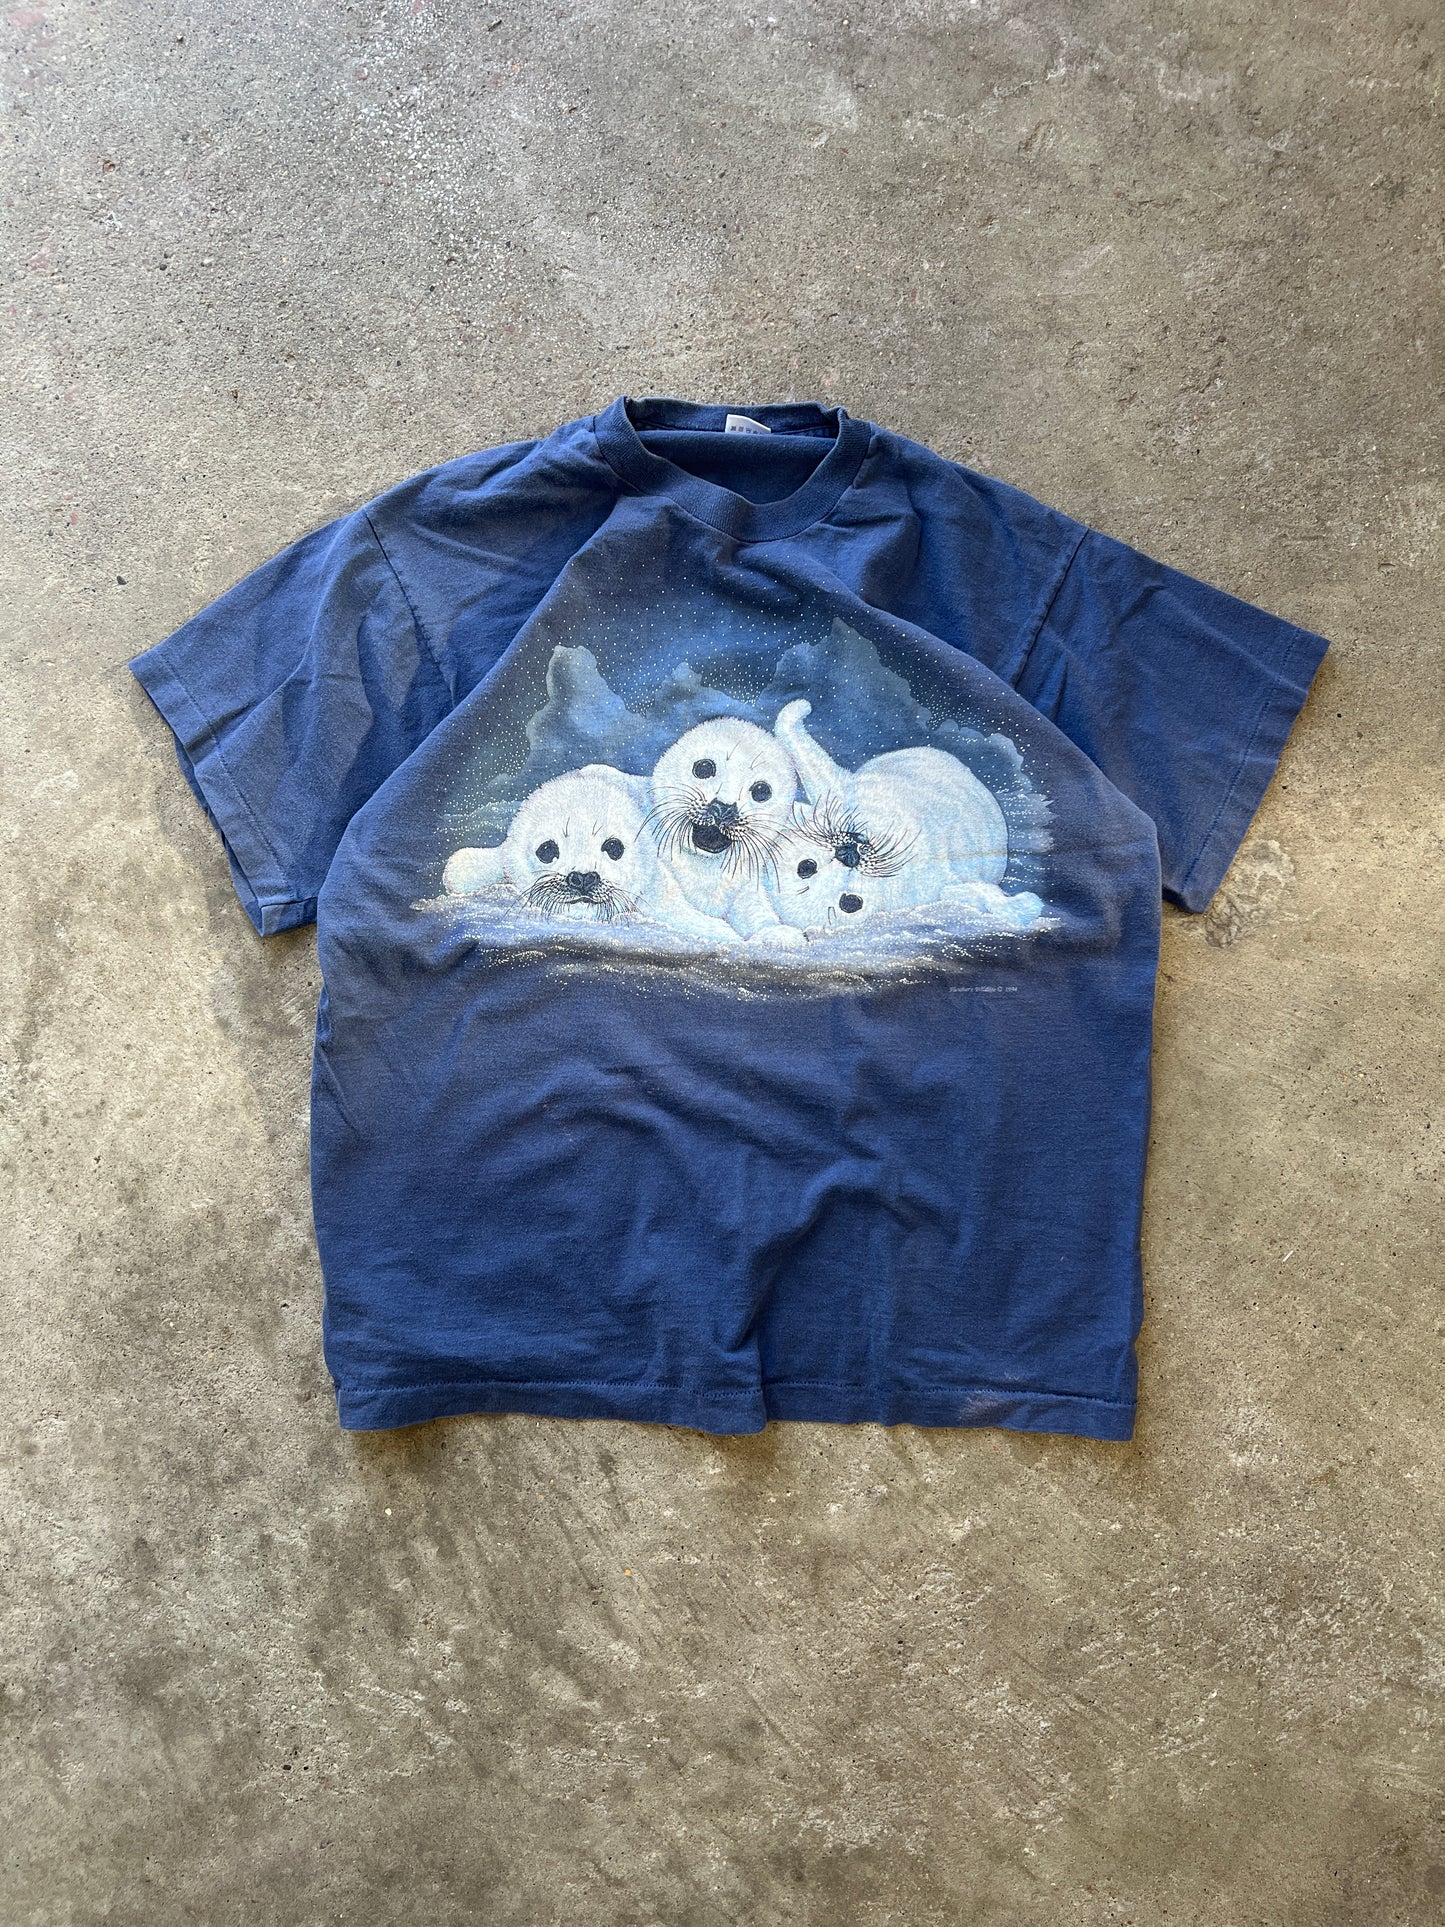 Vintage Snow Lions Shirt - XL